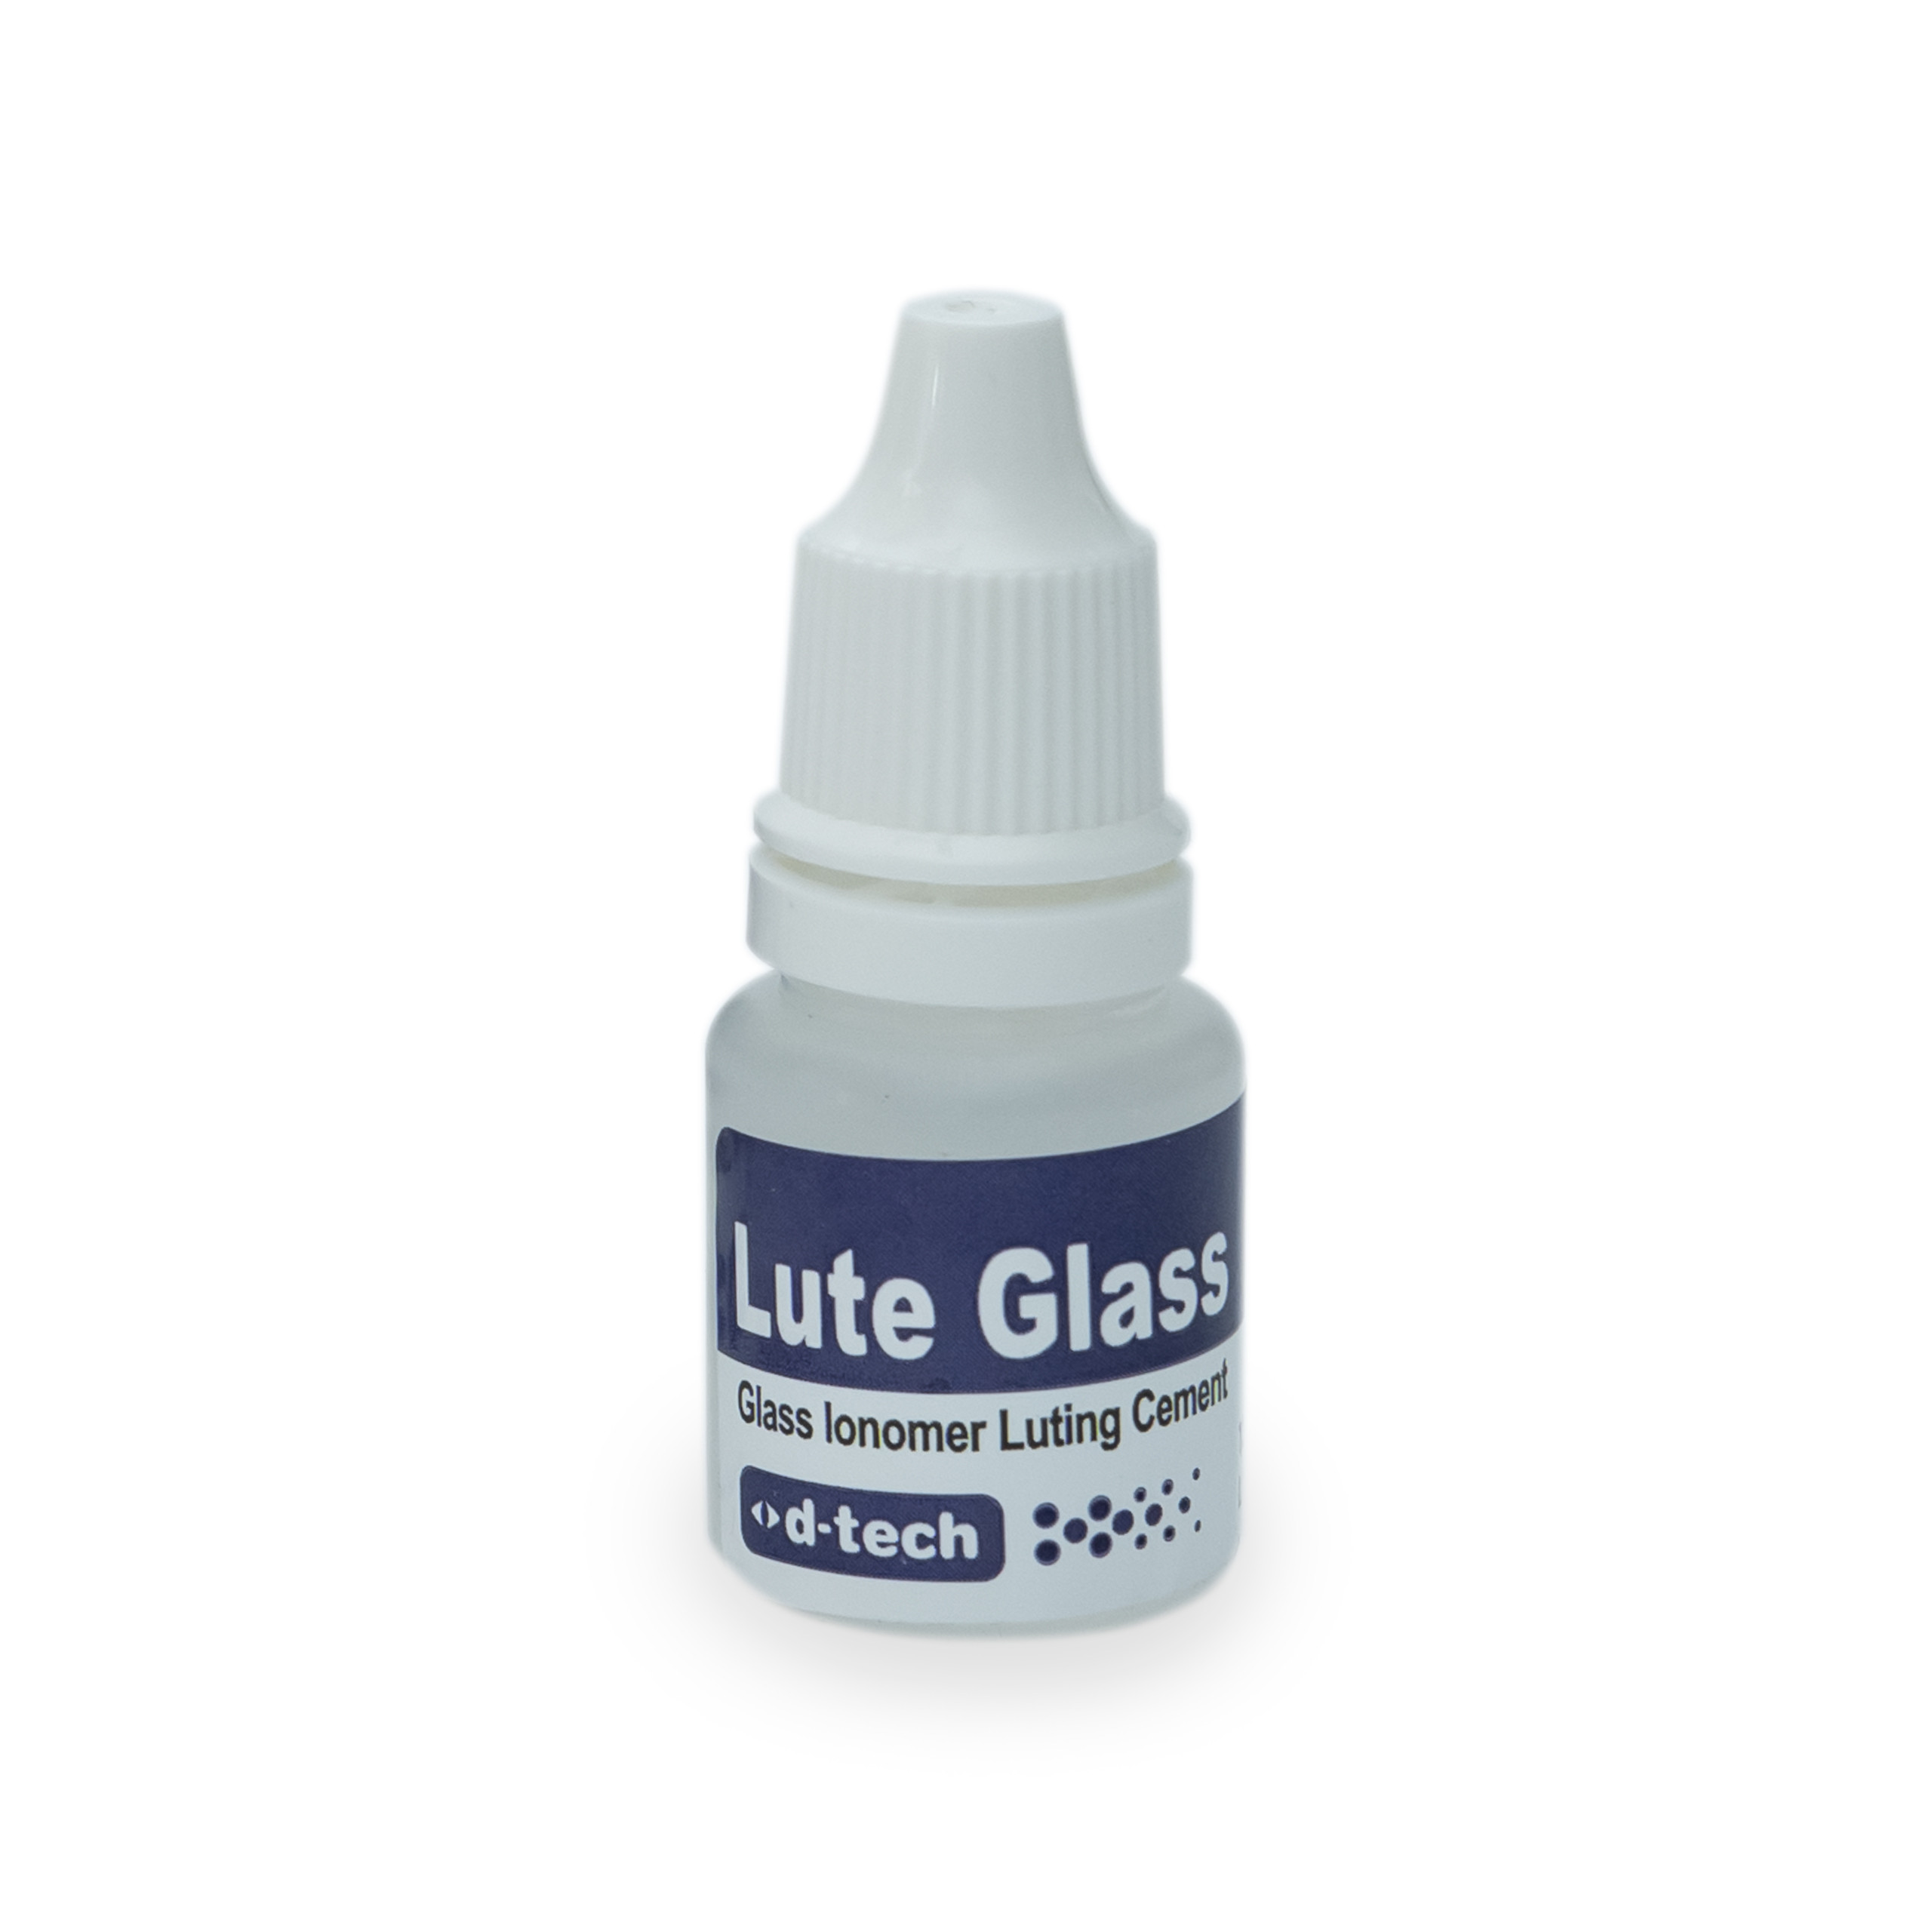 D -Tech Lute Glass (powder15gm And Liquid 13ml) (Expiry 10/2024)